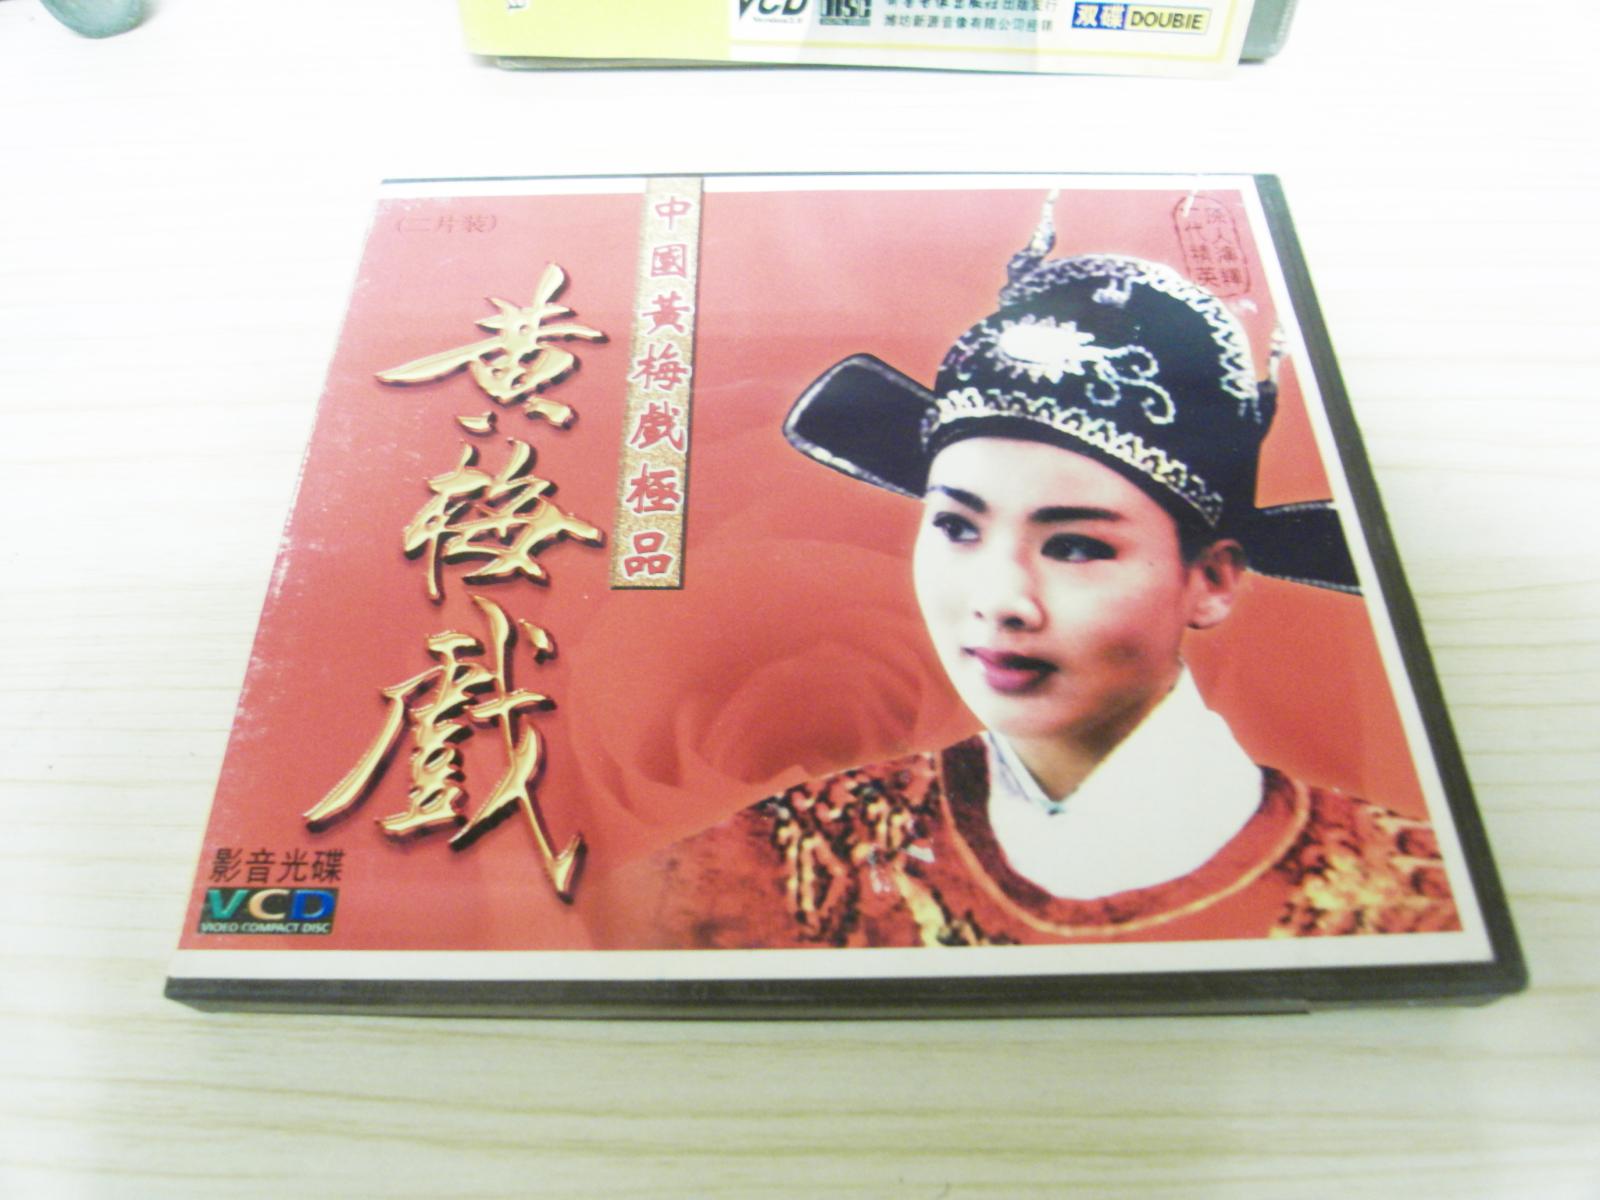 VCD戲曲光盤《中國黃梅戲極品》兩碟裝。主演；韓再芬，馬蘭，黃新德，張輝，吳亞玲